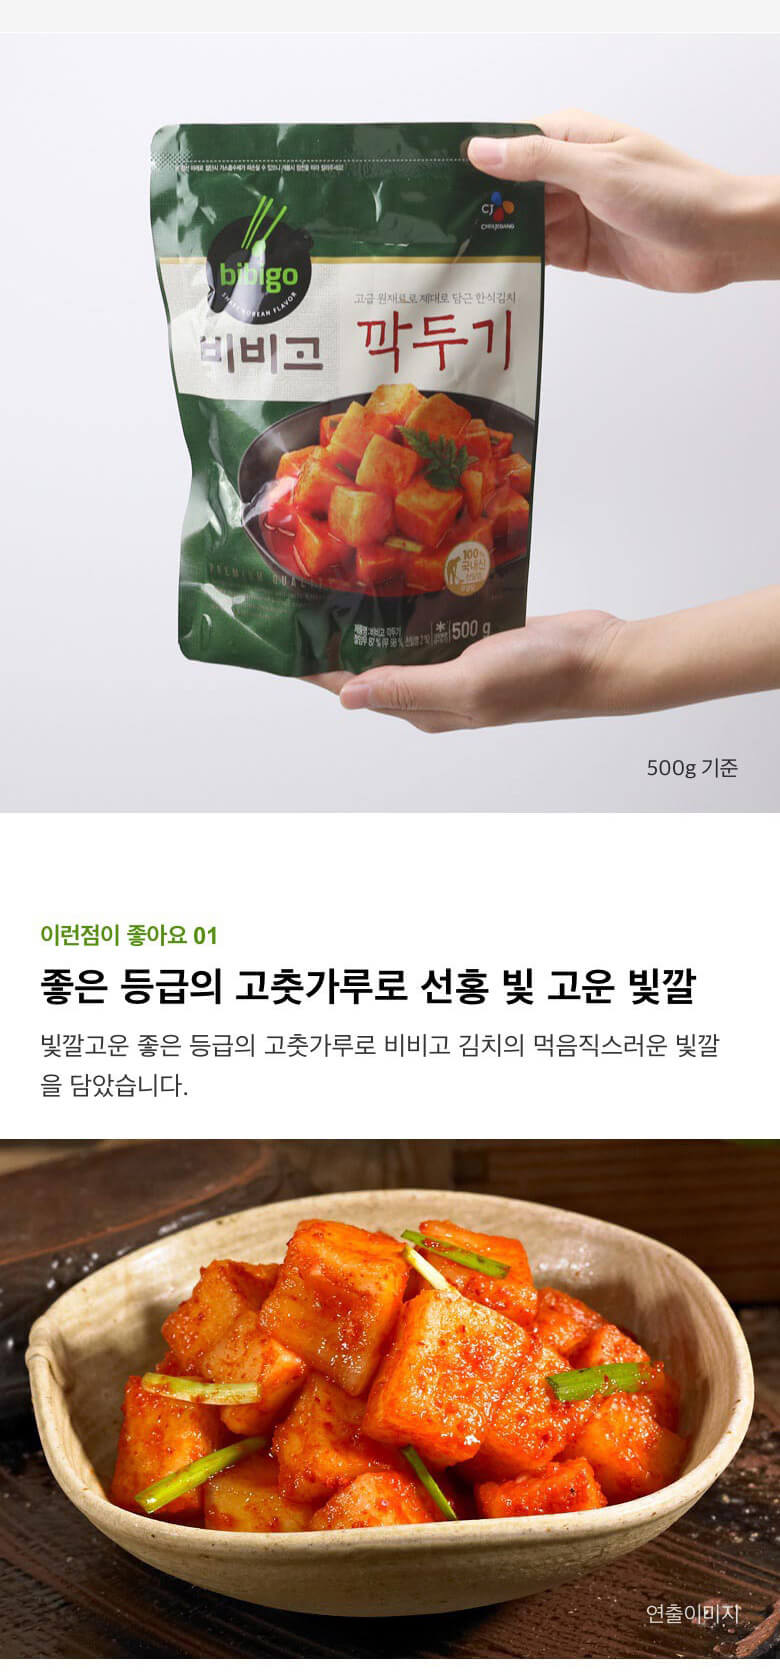 韓國食品-[CJ] Bibigo 蘿蔔粒泡菜 450g